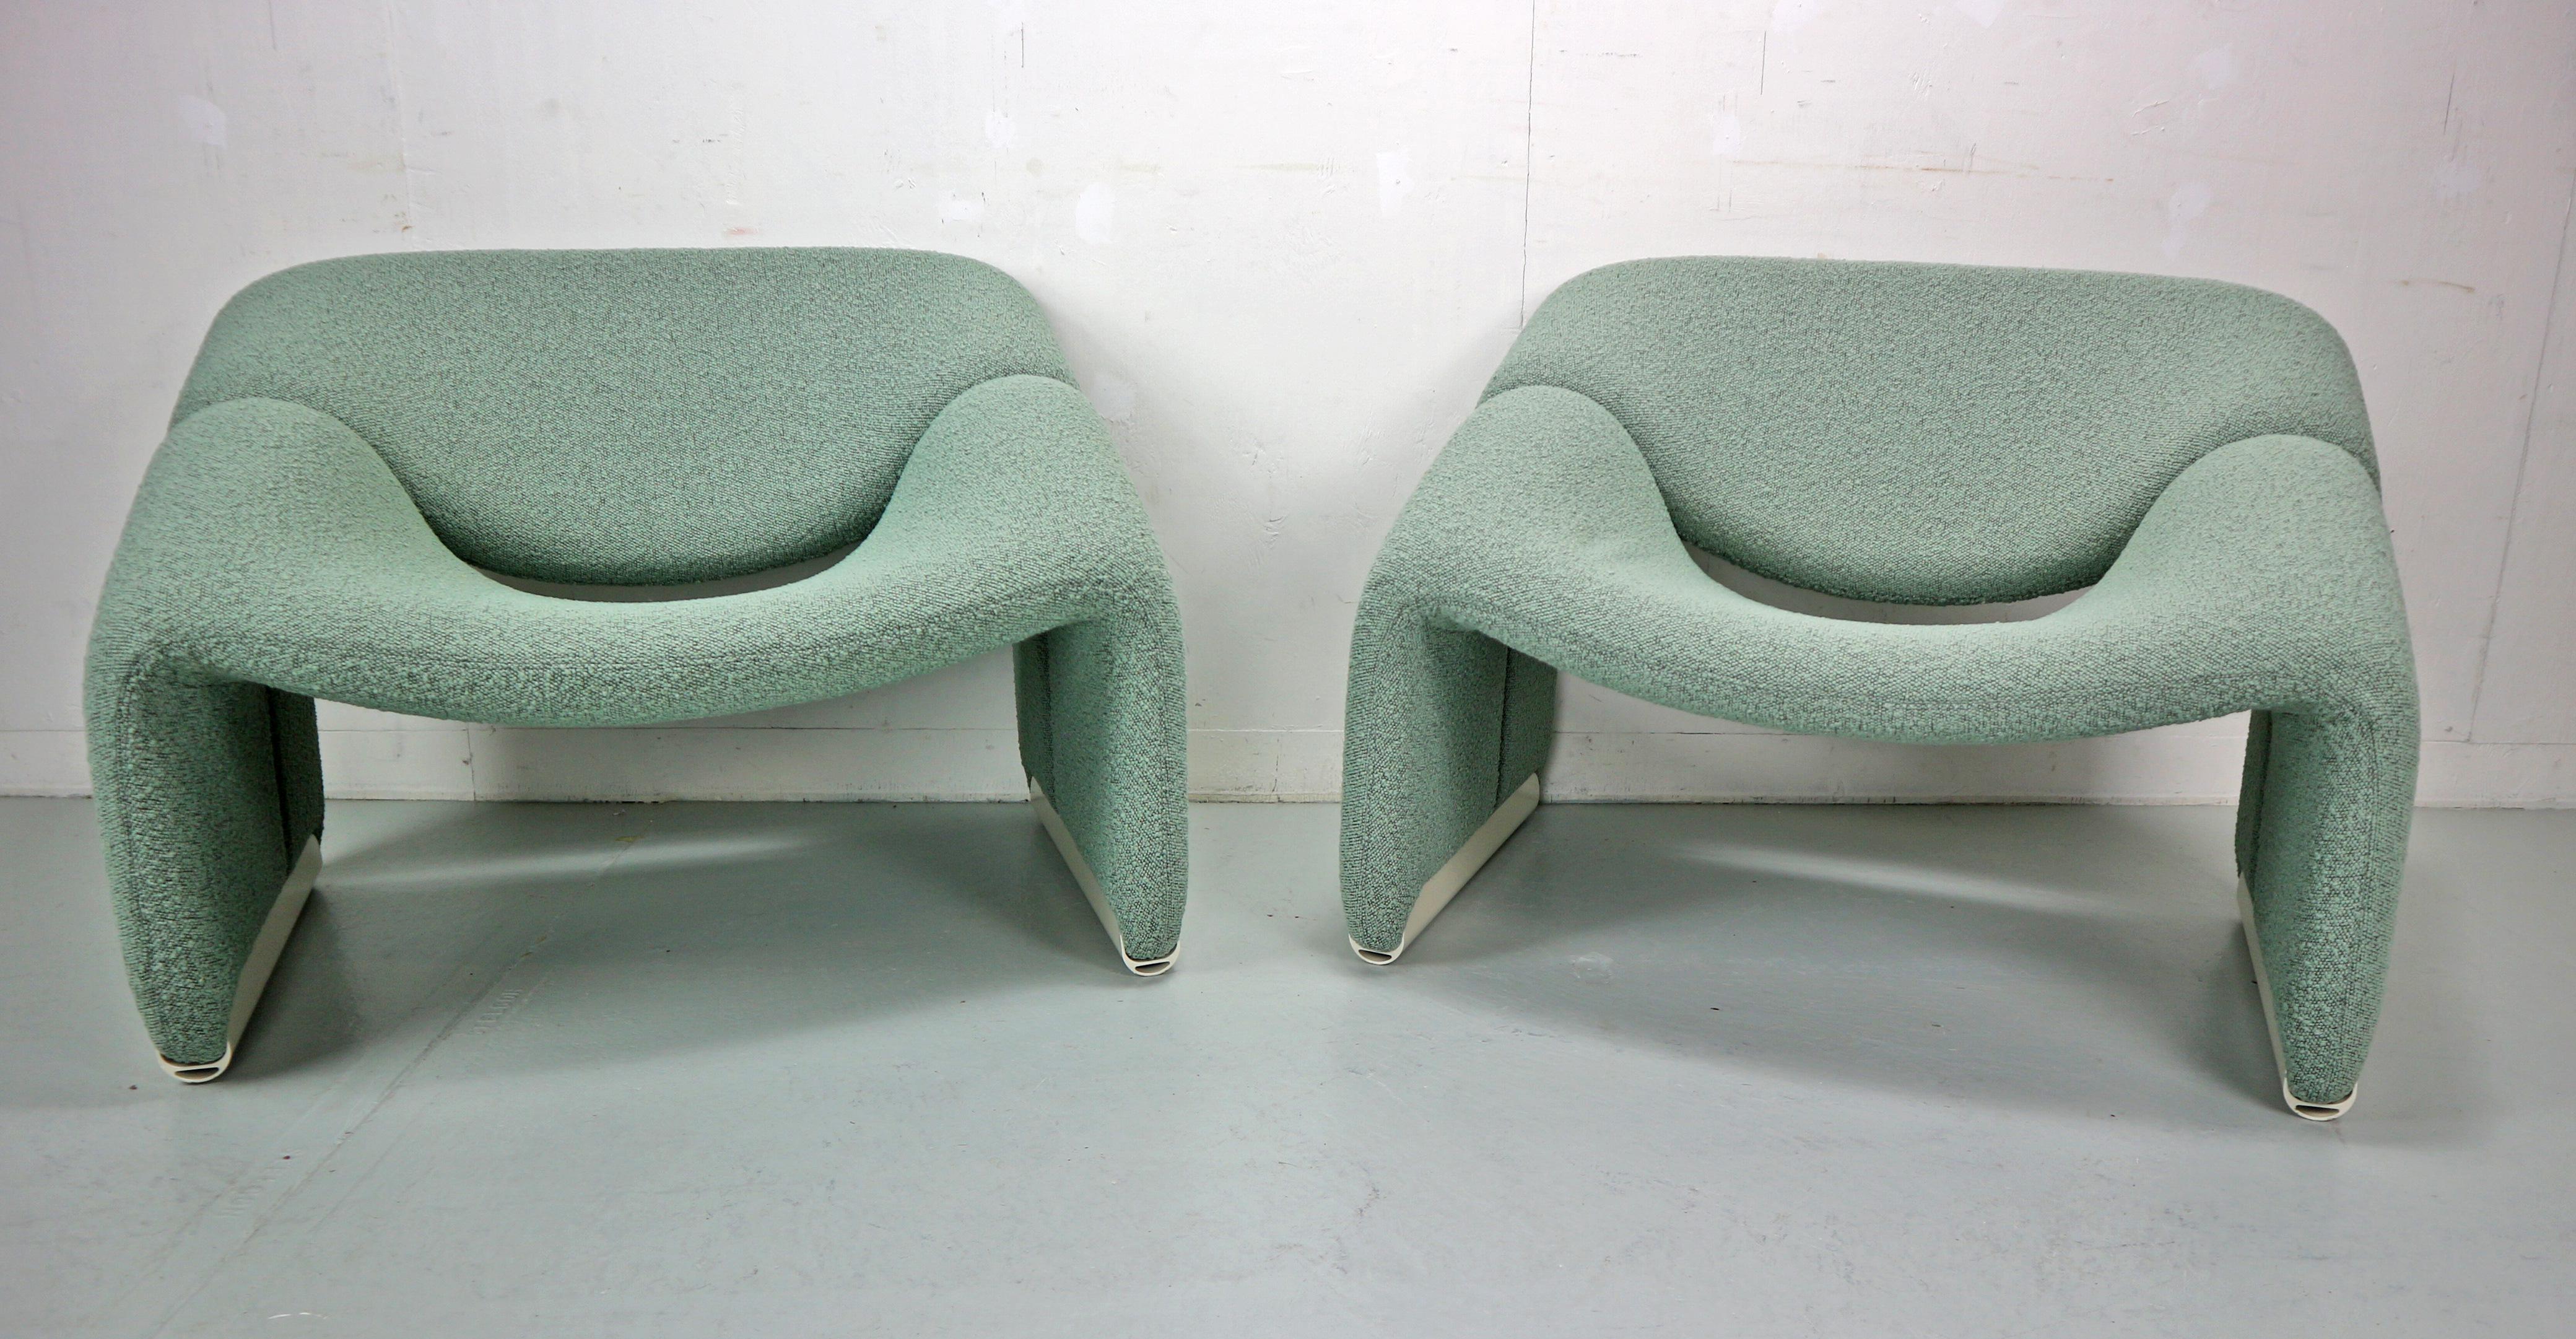 Satz von 2 groovigen Lounge-Sesseln, entworfen von Pierre Paulin im Jahr 1972 und hergestellt für Artifort, Holland.
Modell Nr: F598, oder auch als 